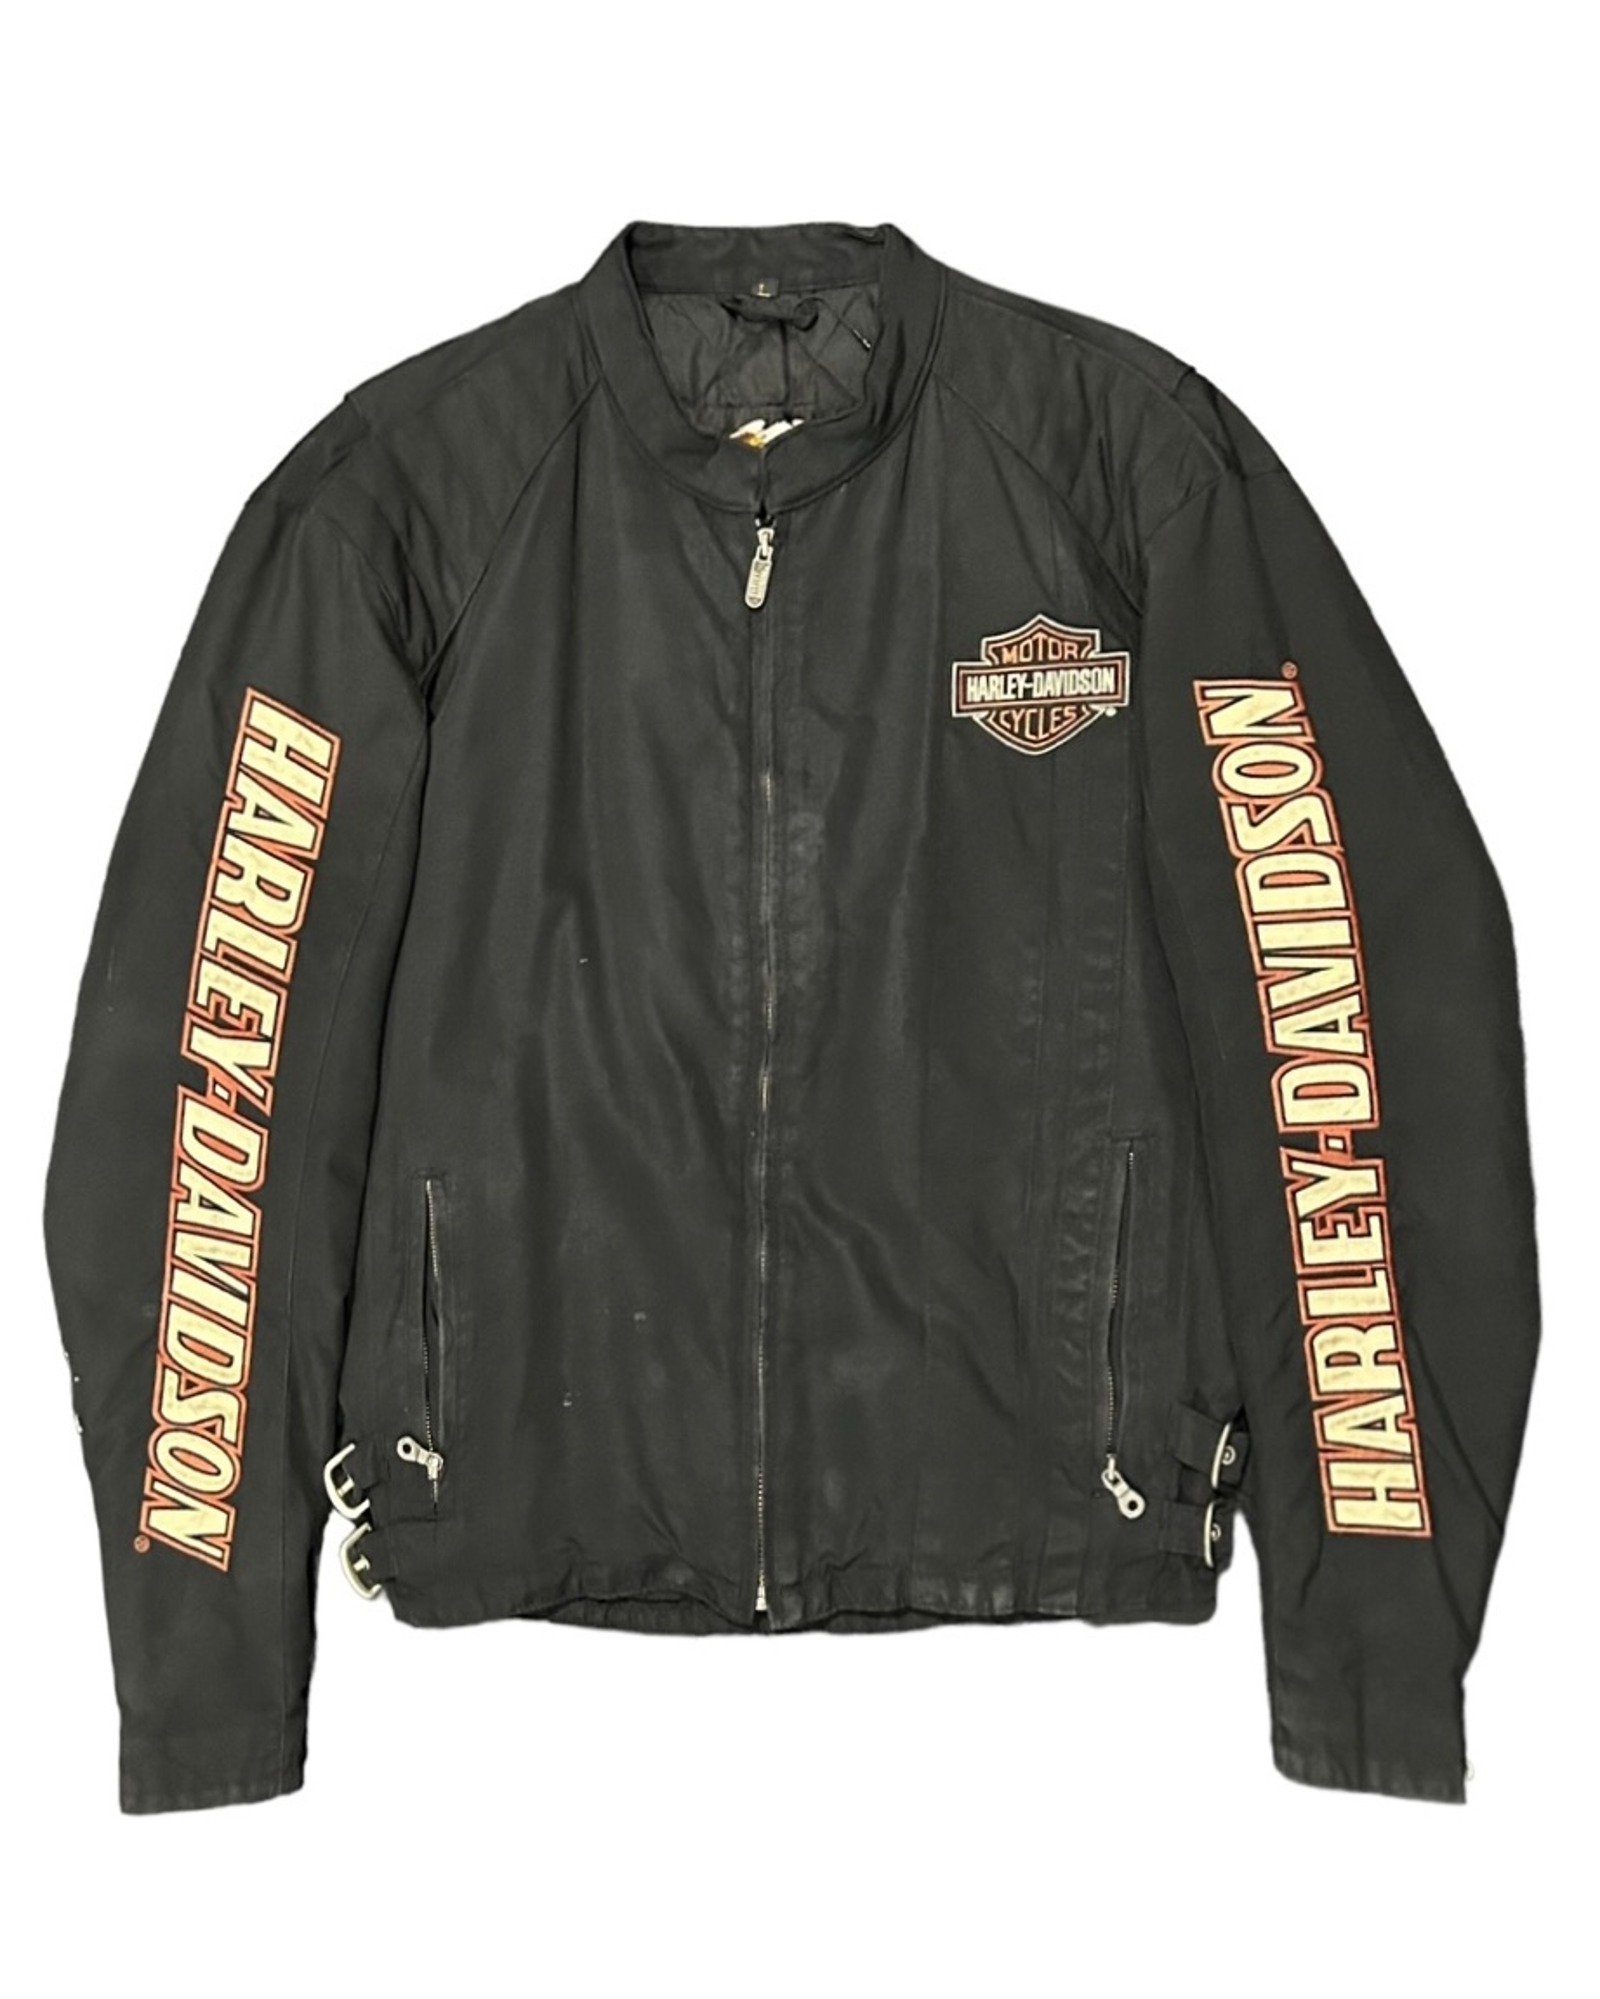 Harley Davidson Overfit Jacket